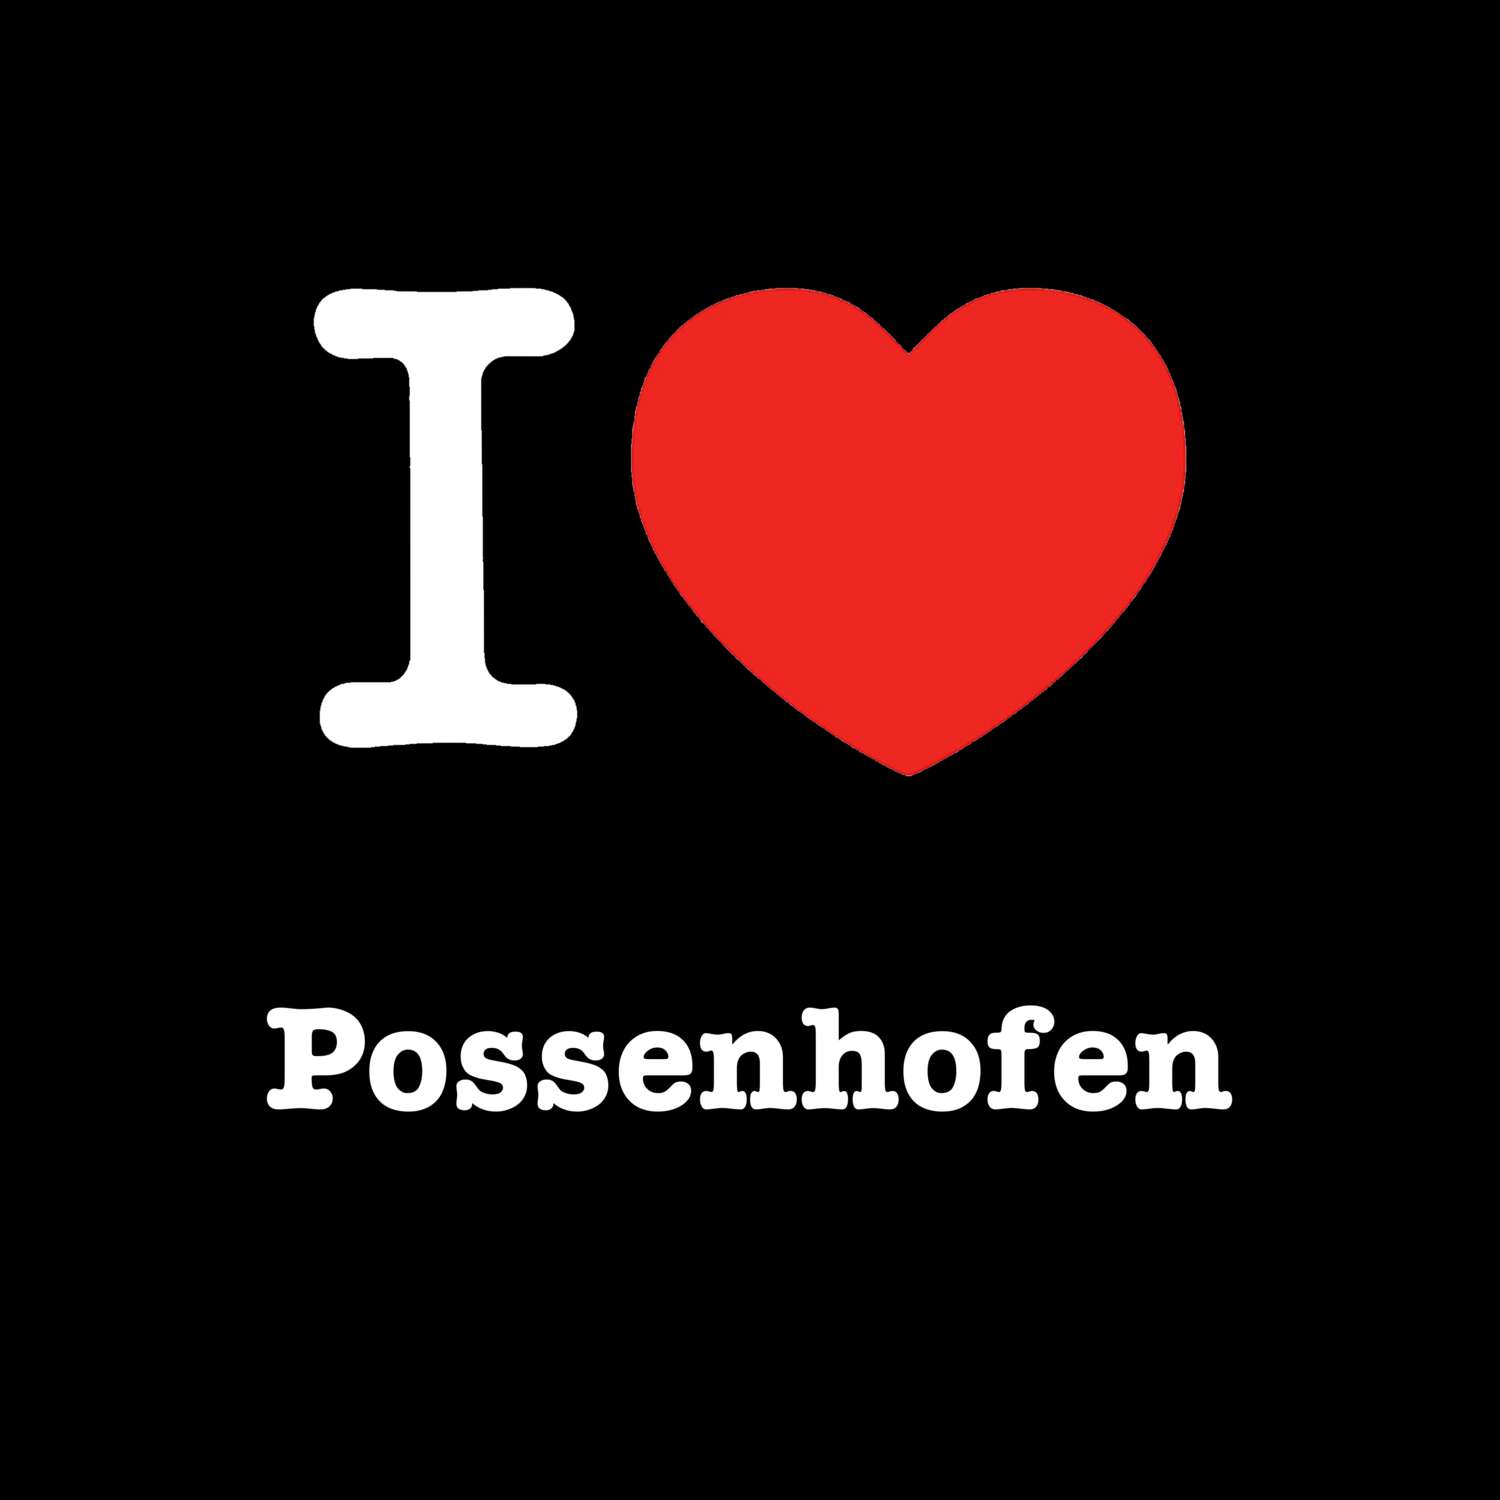 Possenhofen T-Shirt »I love«